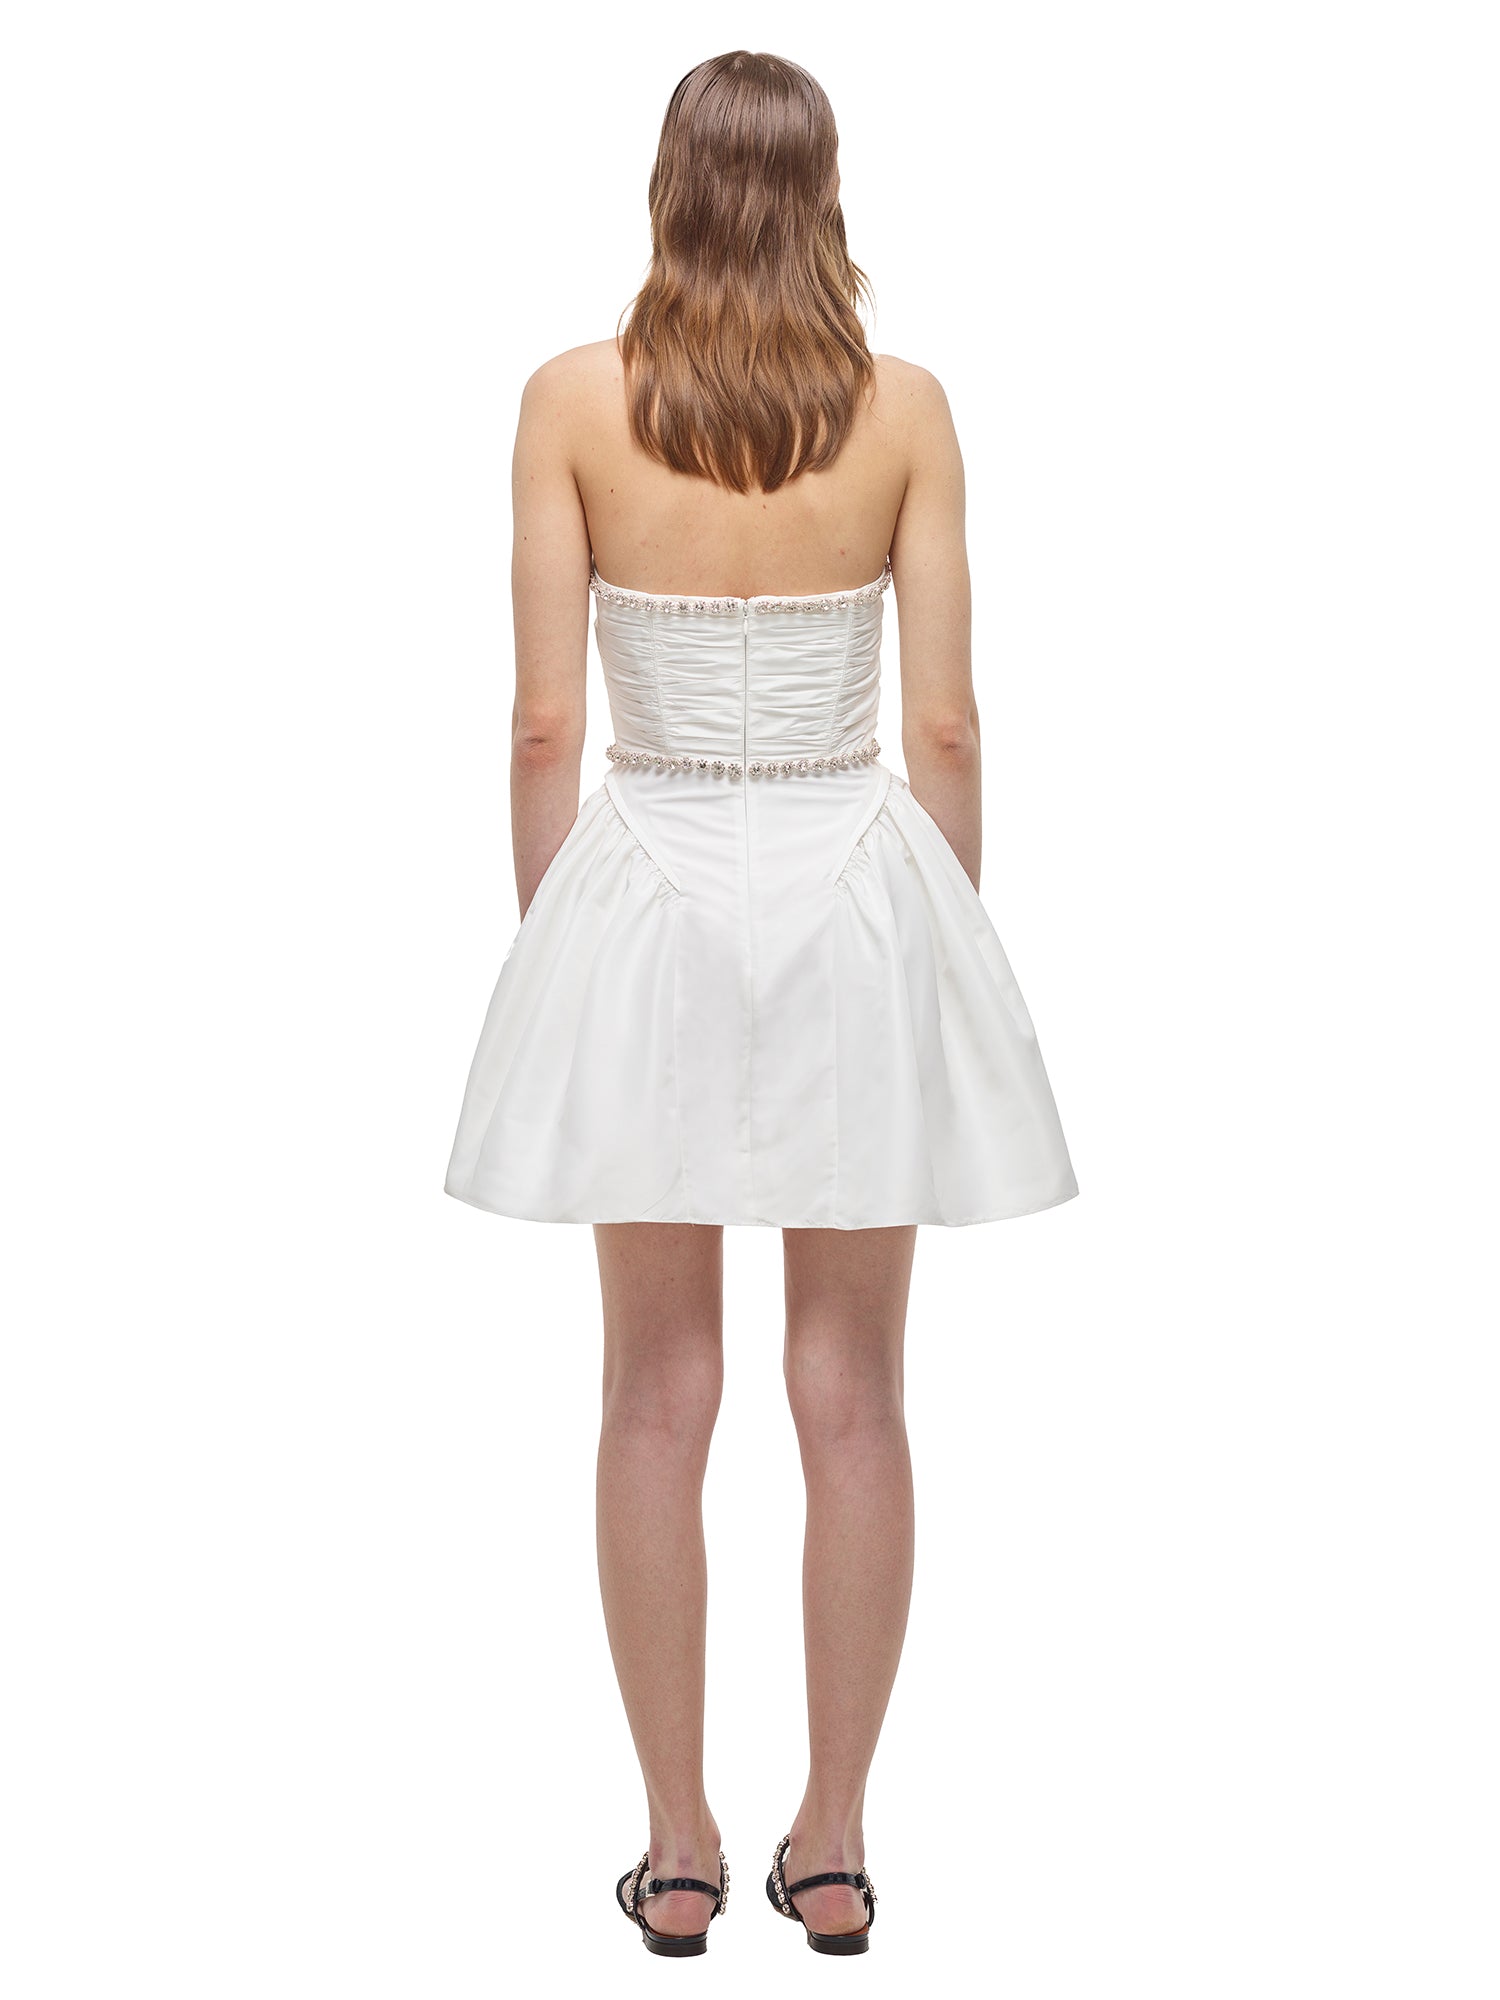 A woman wearing the White Taffeta Diamante Trim Mini Dress